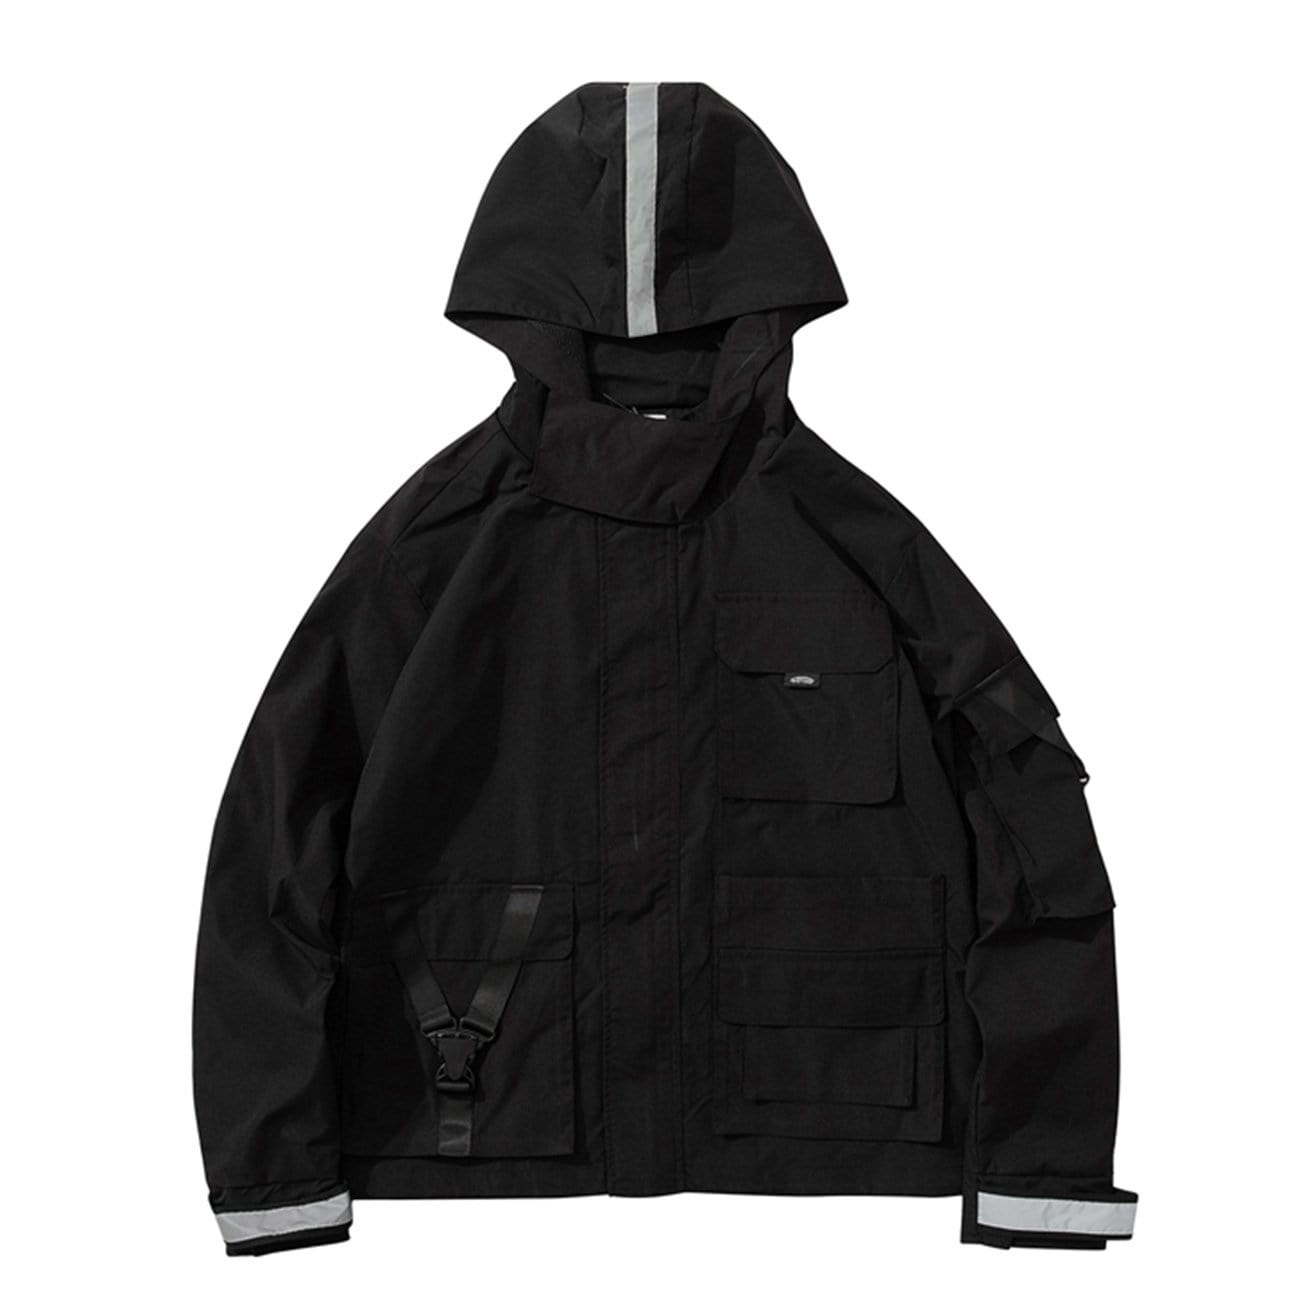 Retro Hooded Workwear Jacket Streetwear Brand Techwear Combat Tactical YUGEN THEORY